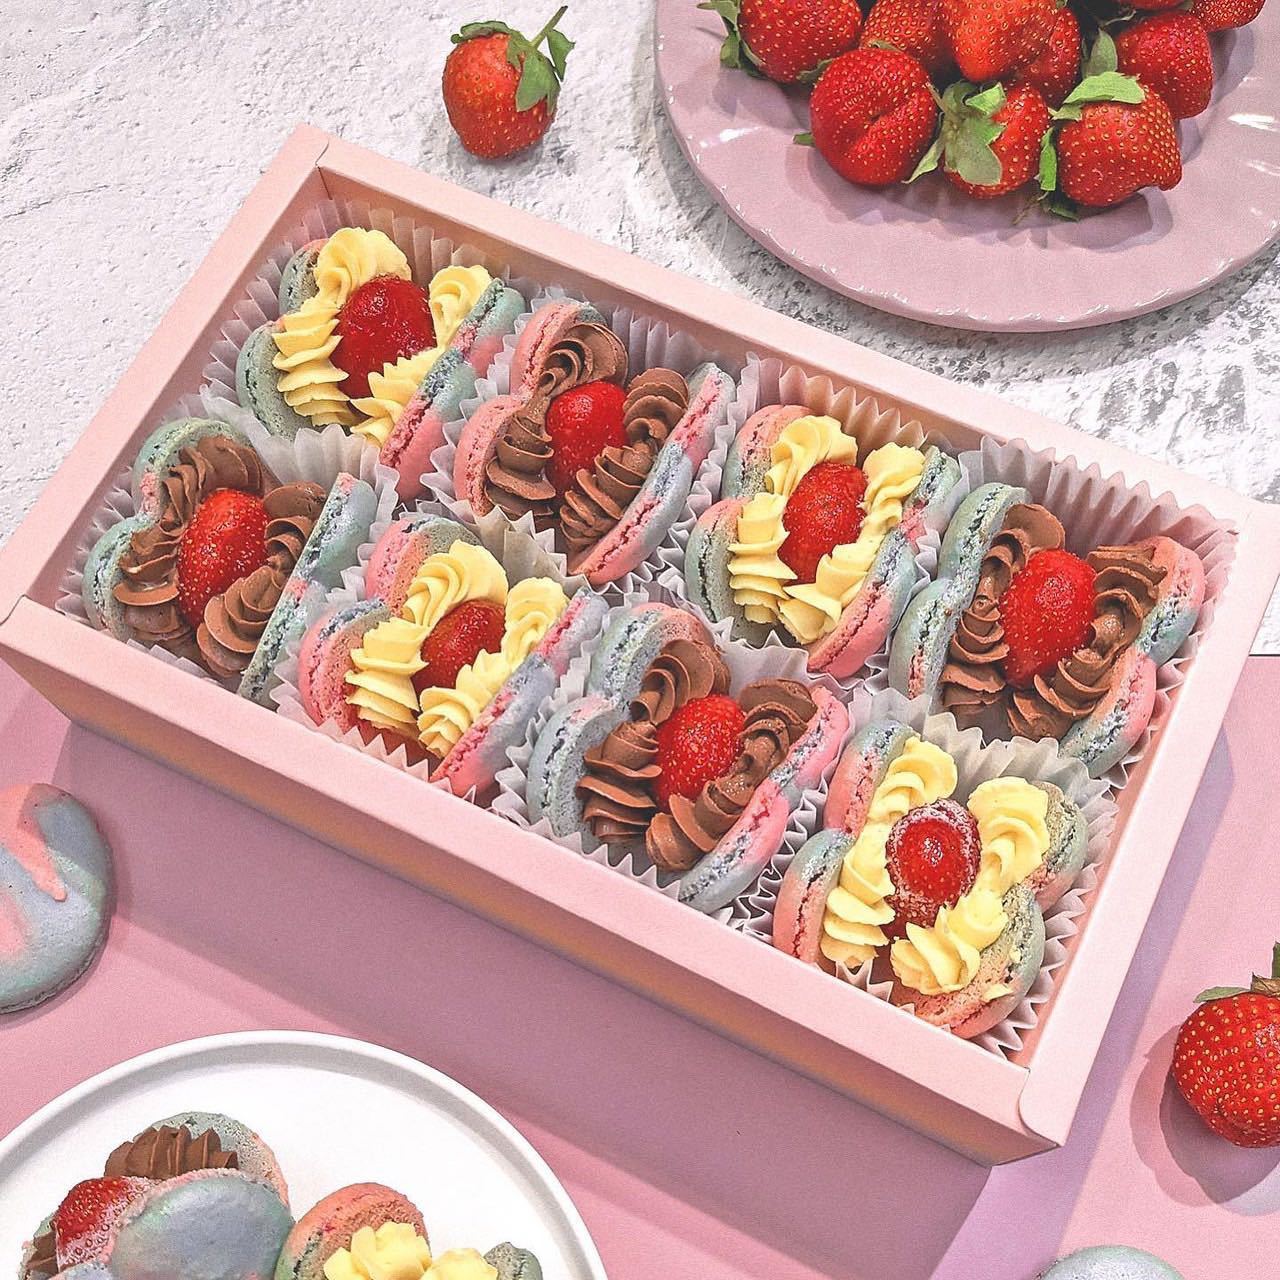 馬卡龍酥軟外殼夾著整顆草莓水果。圖片來源：【Fascinée菲斯尼 法式馬卡龍】粉專